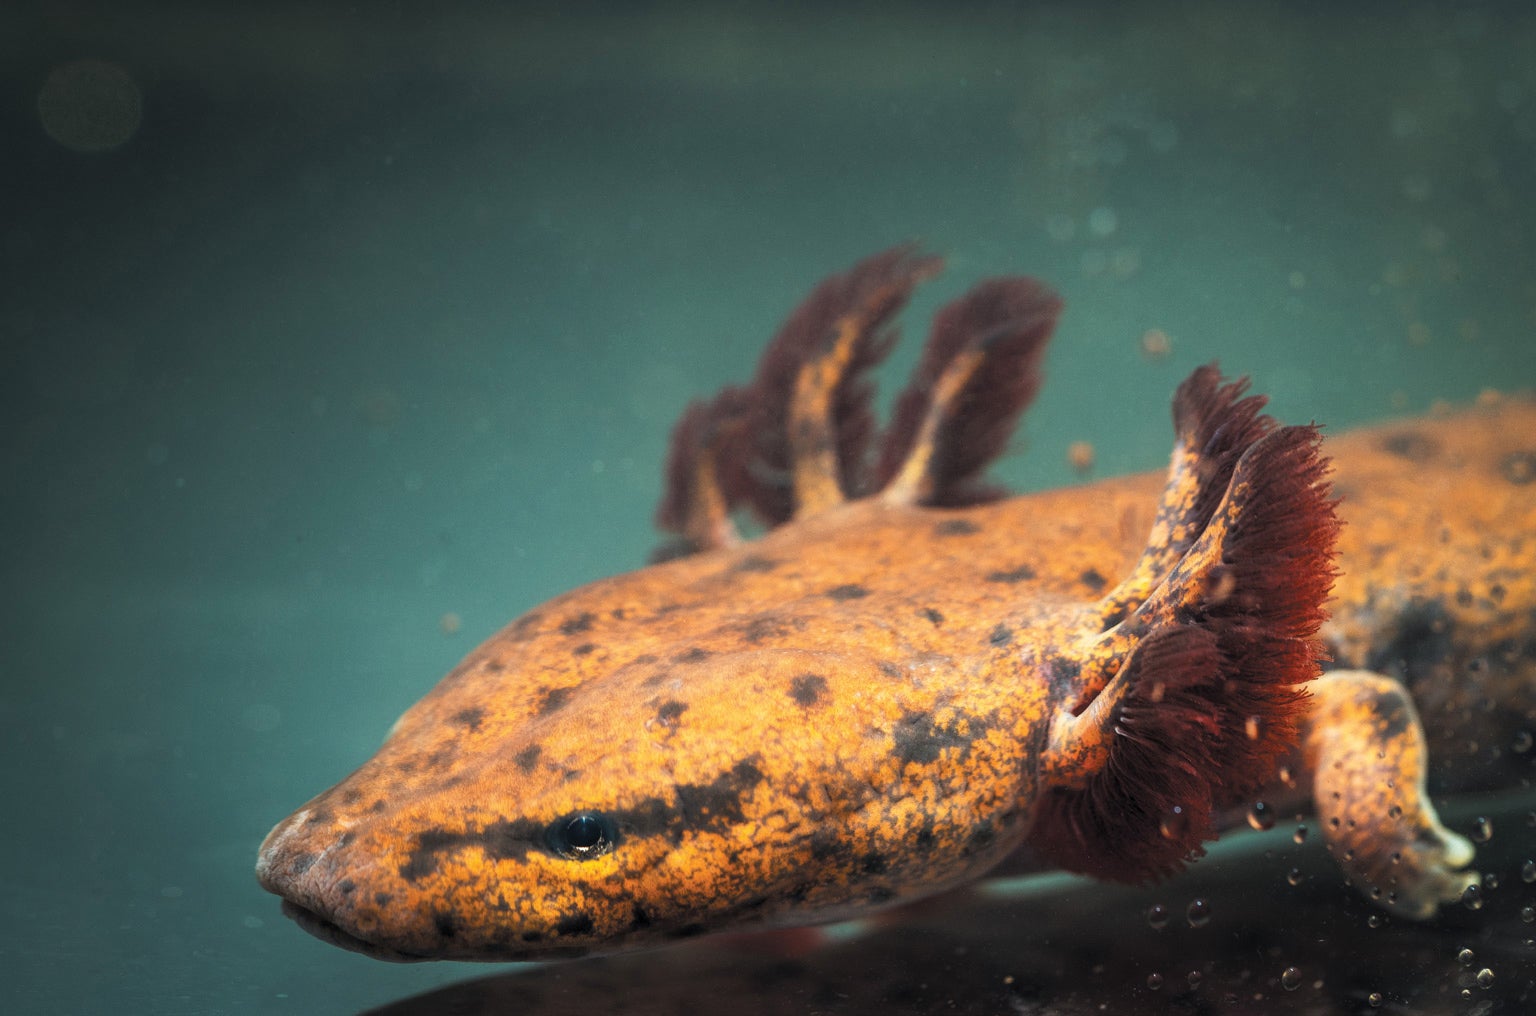 Salamander in water.